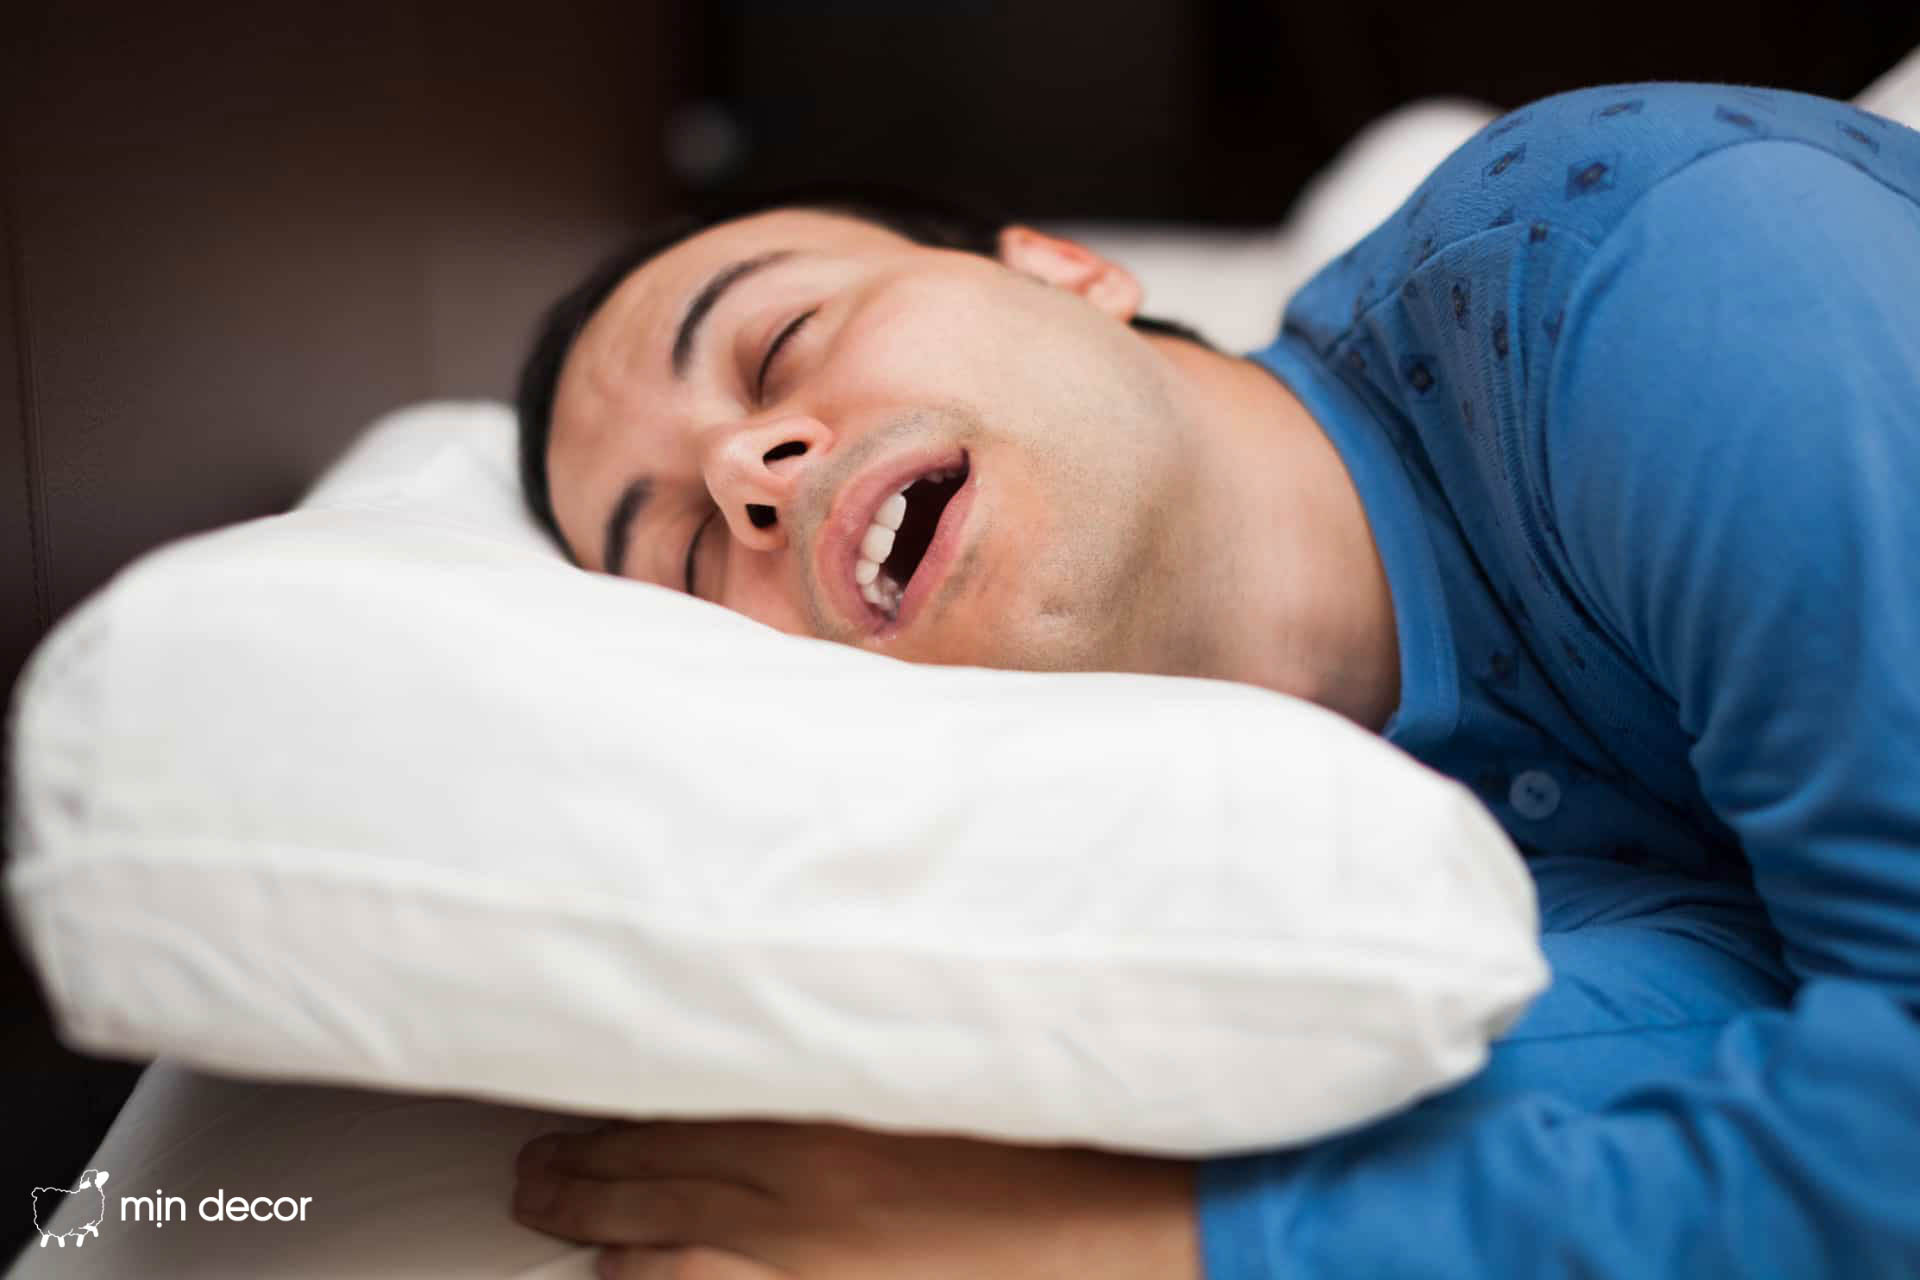 Tổng hợp những cách giúp bạn ngừng ngáy khi ngủ